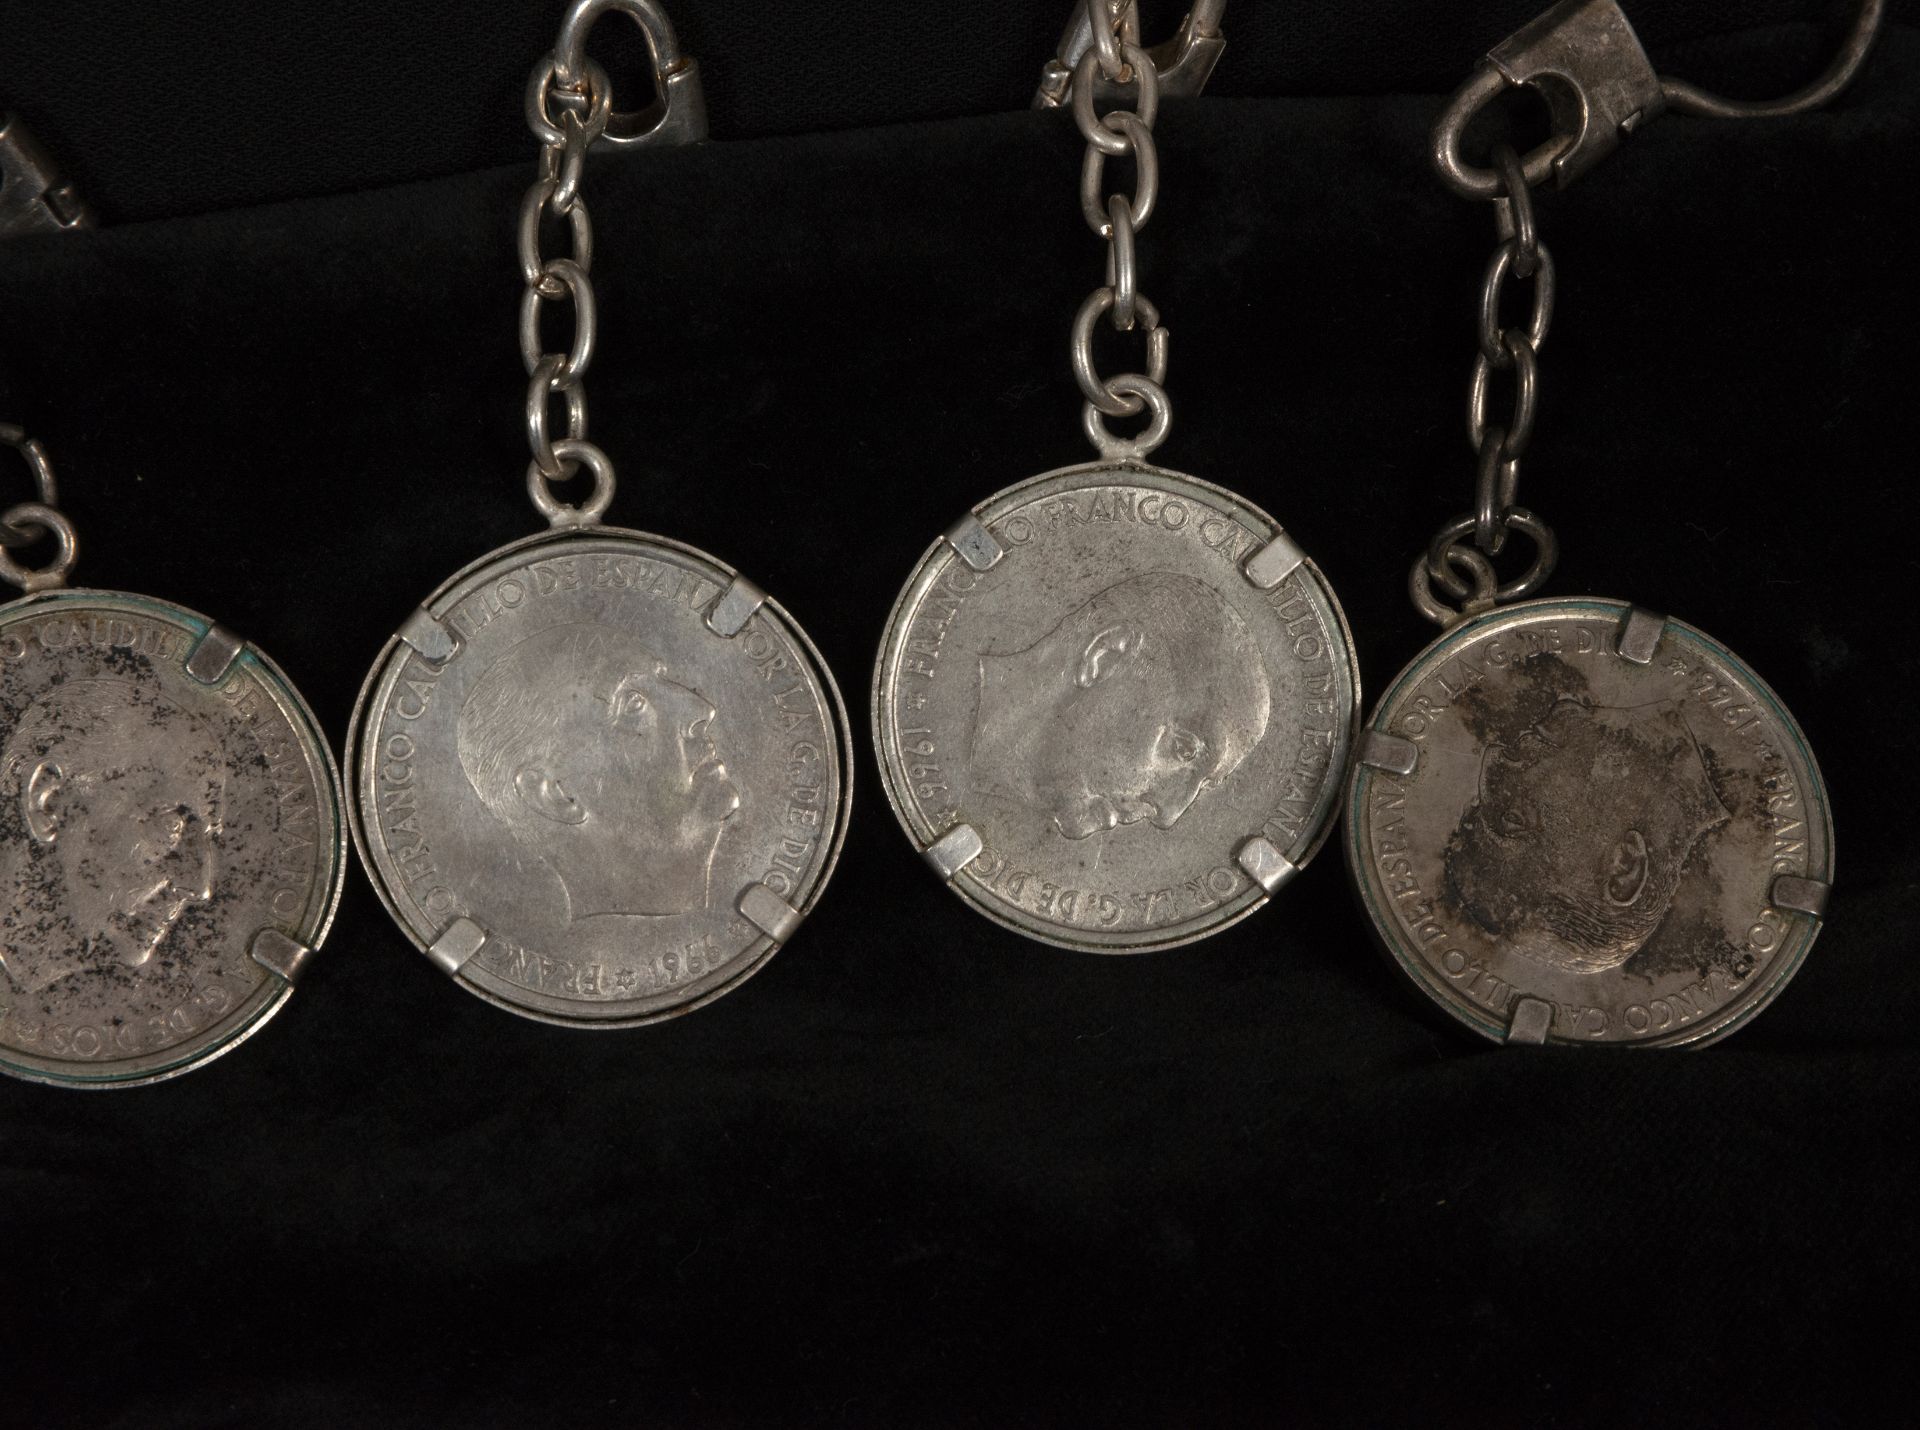 Lot of bracelet decorations made up of 925 silver coins, framed - Bild 3 aus 3